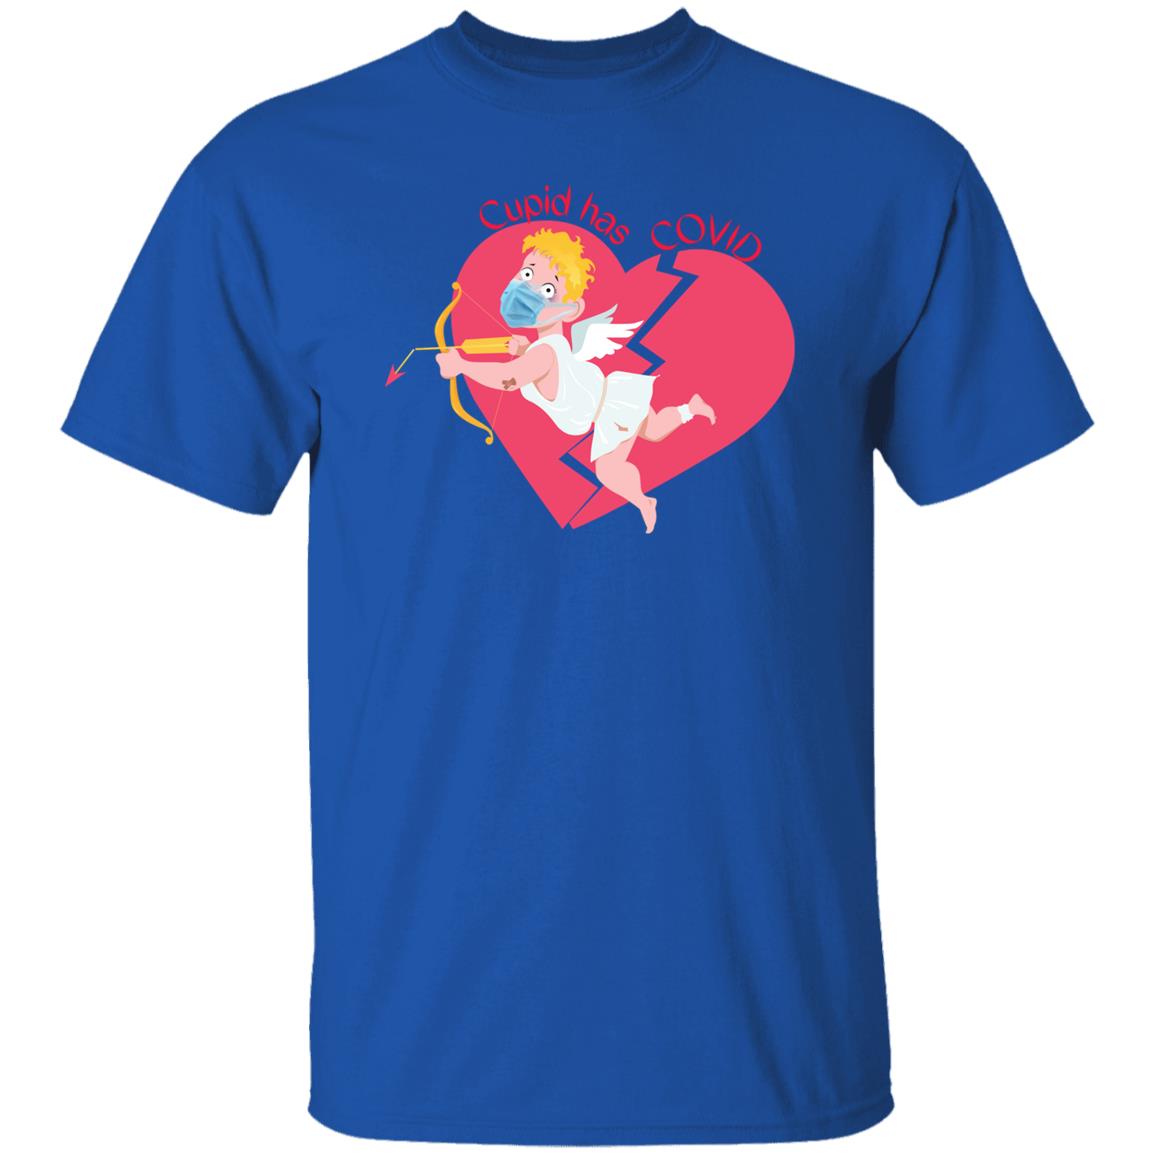 Cupid has Covid G500 5.3 oz. T-Shirt